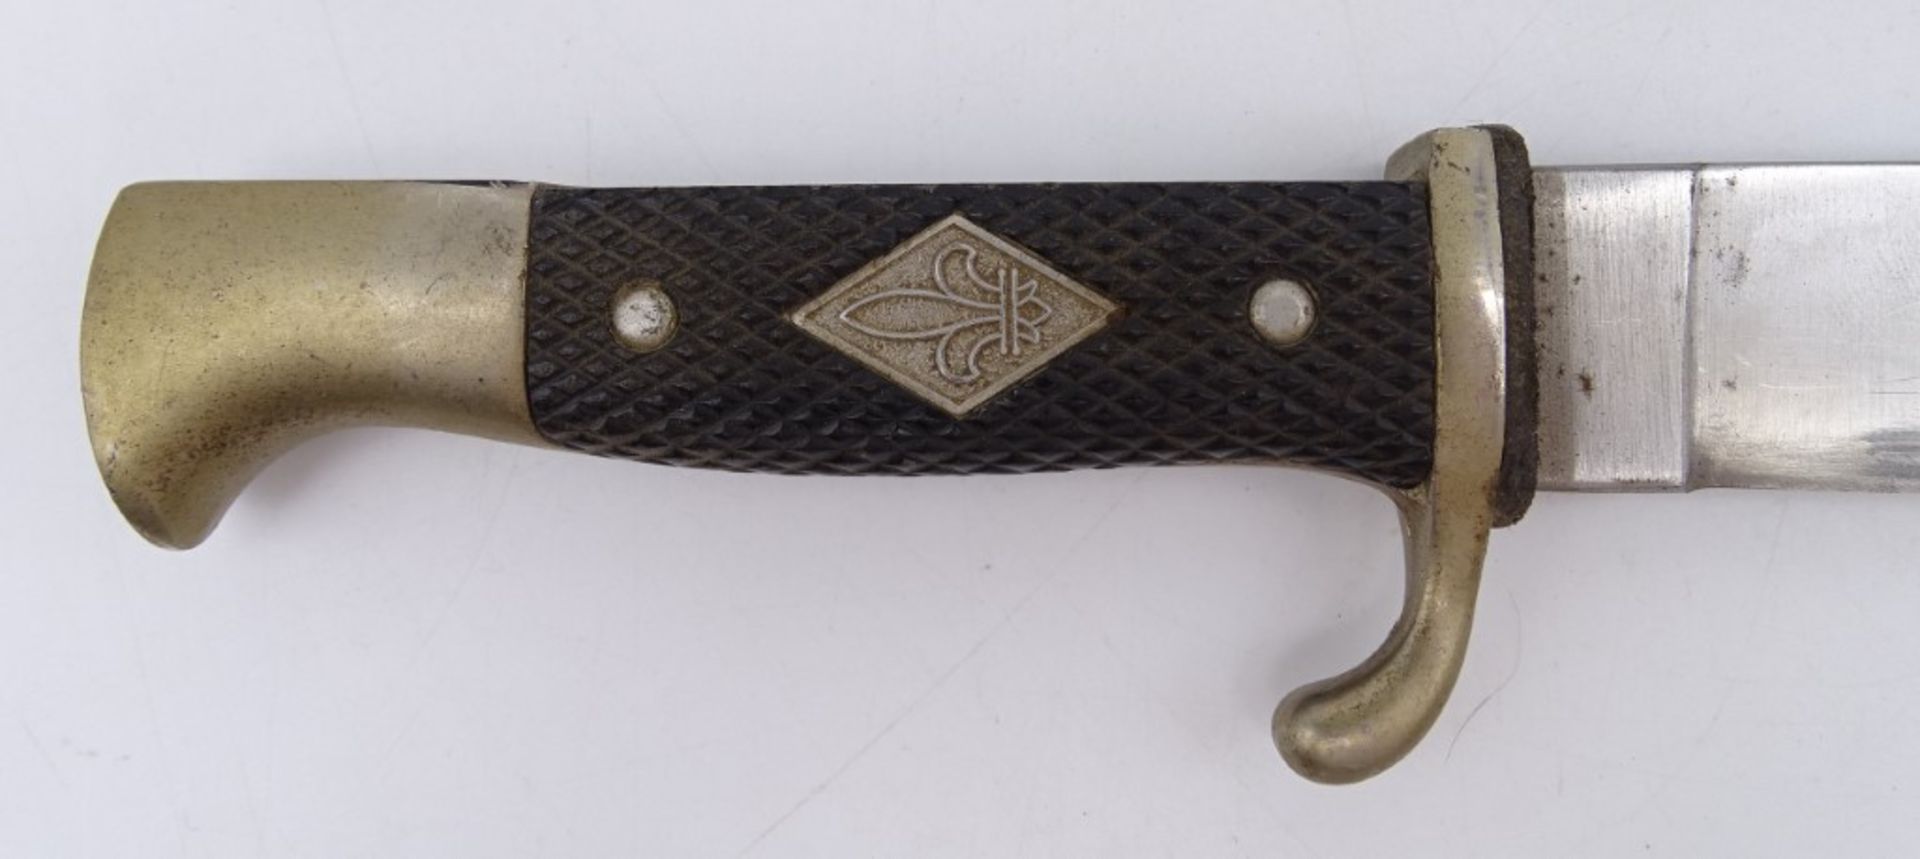 Pfadfindermesser DES Solingen, Griff mit Lilienemblem in Raute, Metallscheide, L. Klinge: 24,5 cm - Bild 3 aus 5